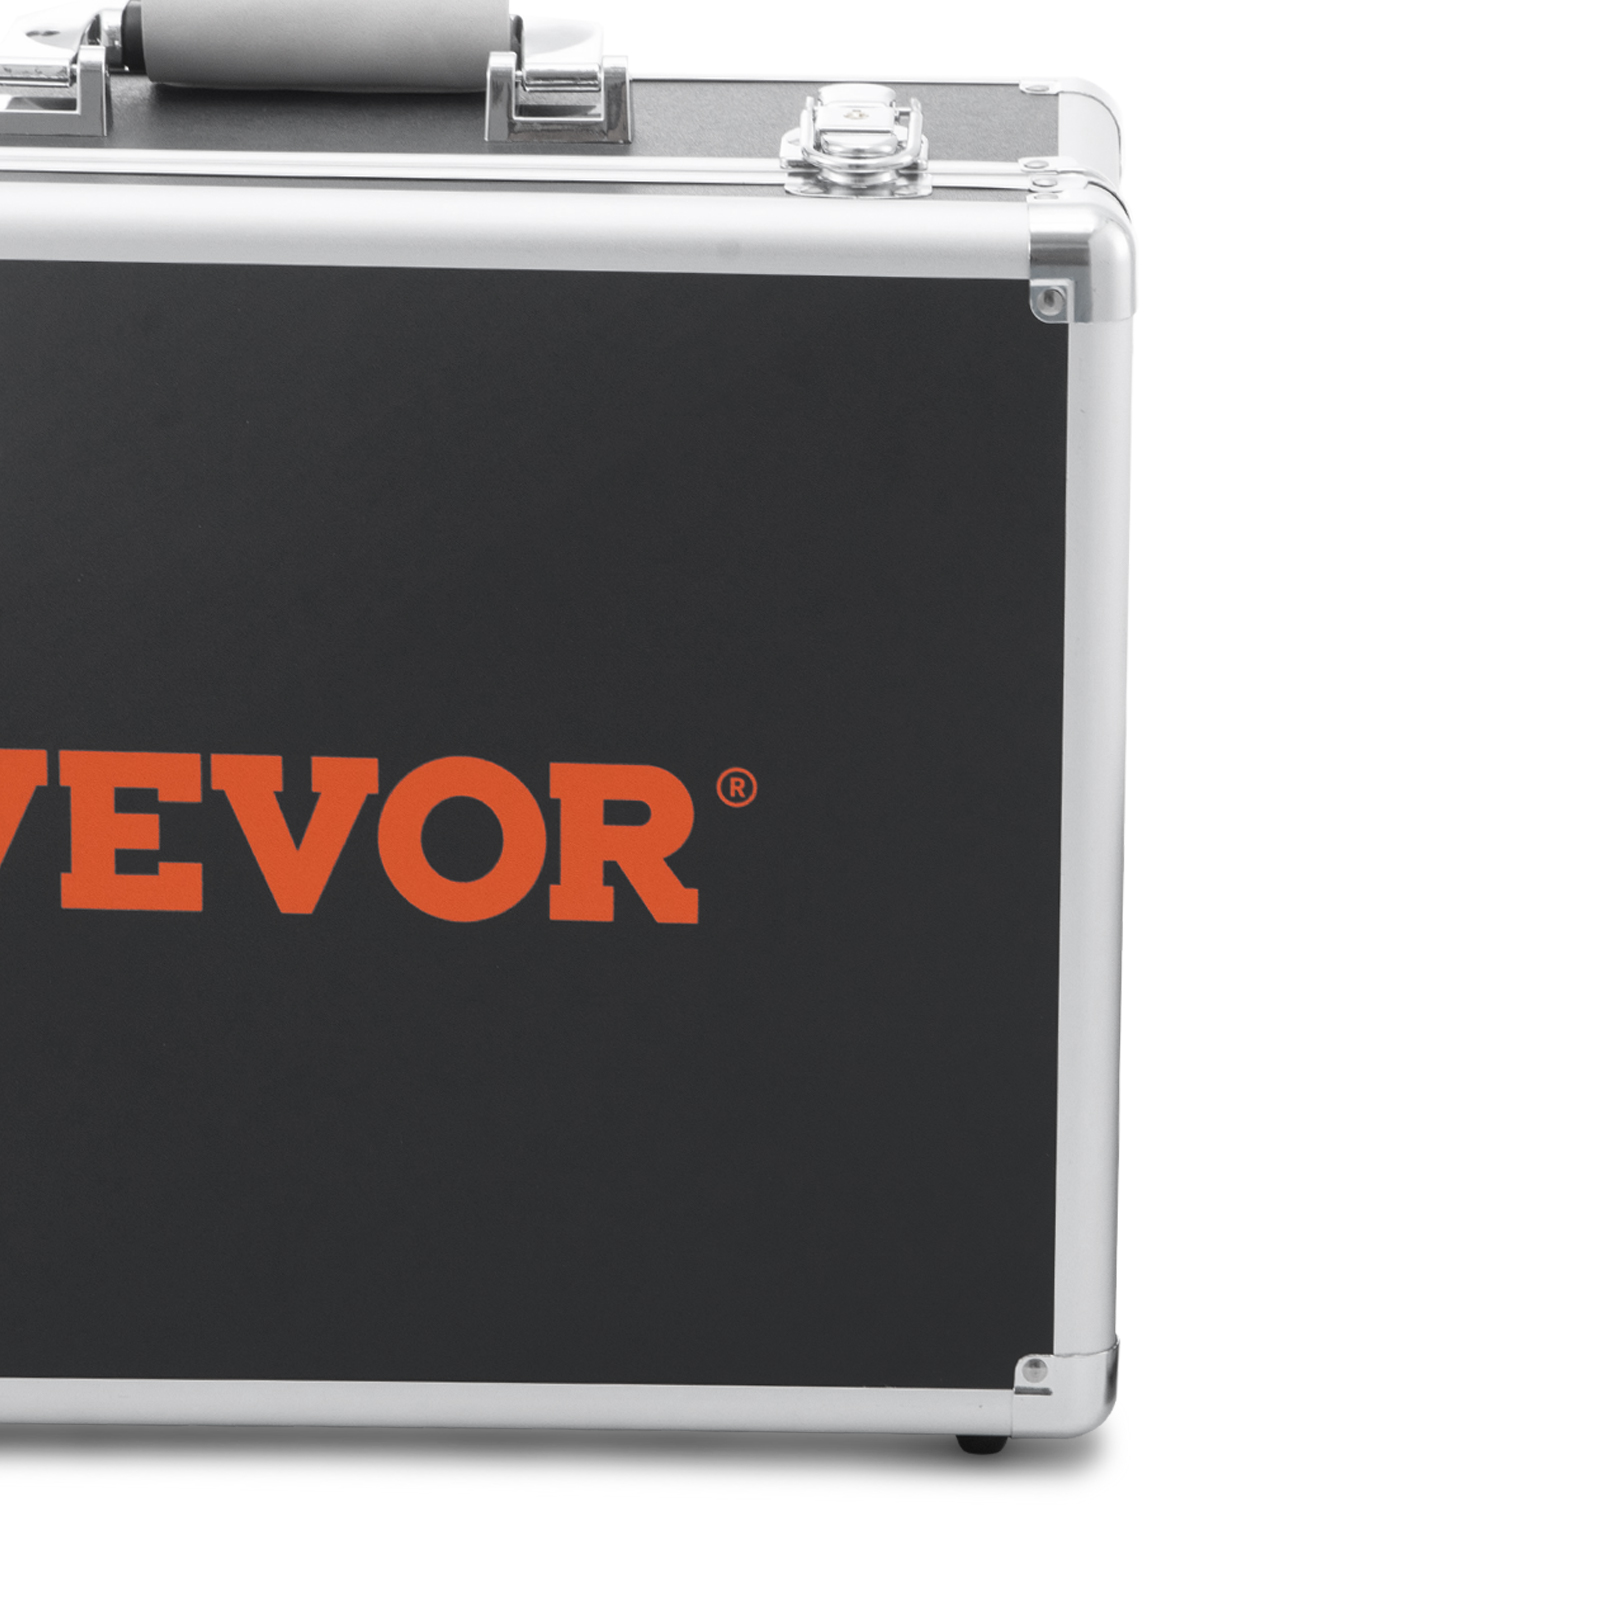 VEVOR труба камера инспекции камера канализации 1000TVL эндоскоп 30м промышленность 16GB SD карта 512 Гц локатор 480P цветной монитор Dvr 4500mAh